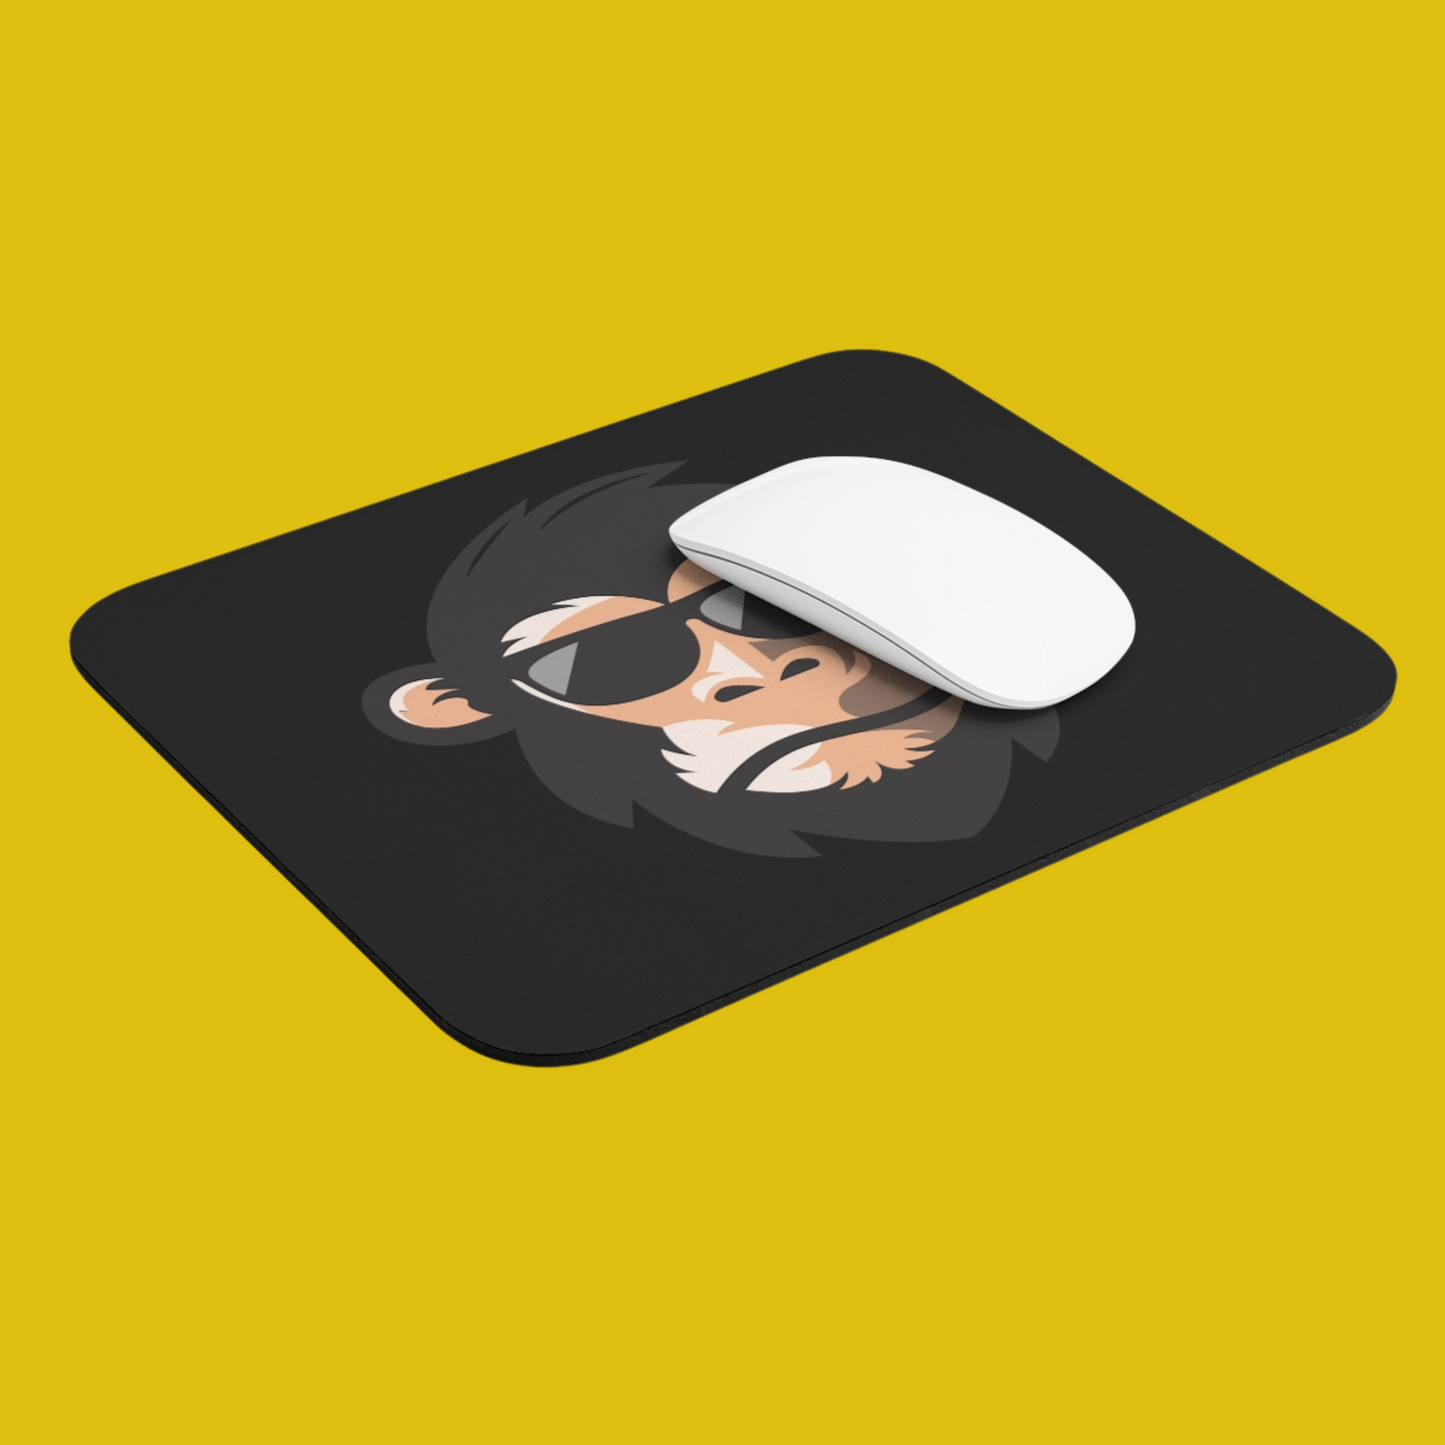 Monkey Mouse pad - Developer / Programmer / Coder / Software Engineer / DevOps